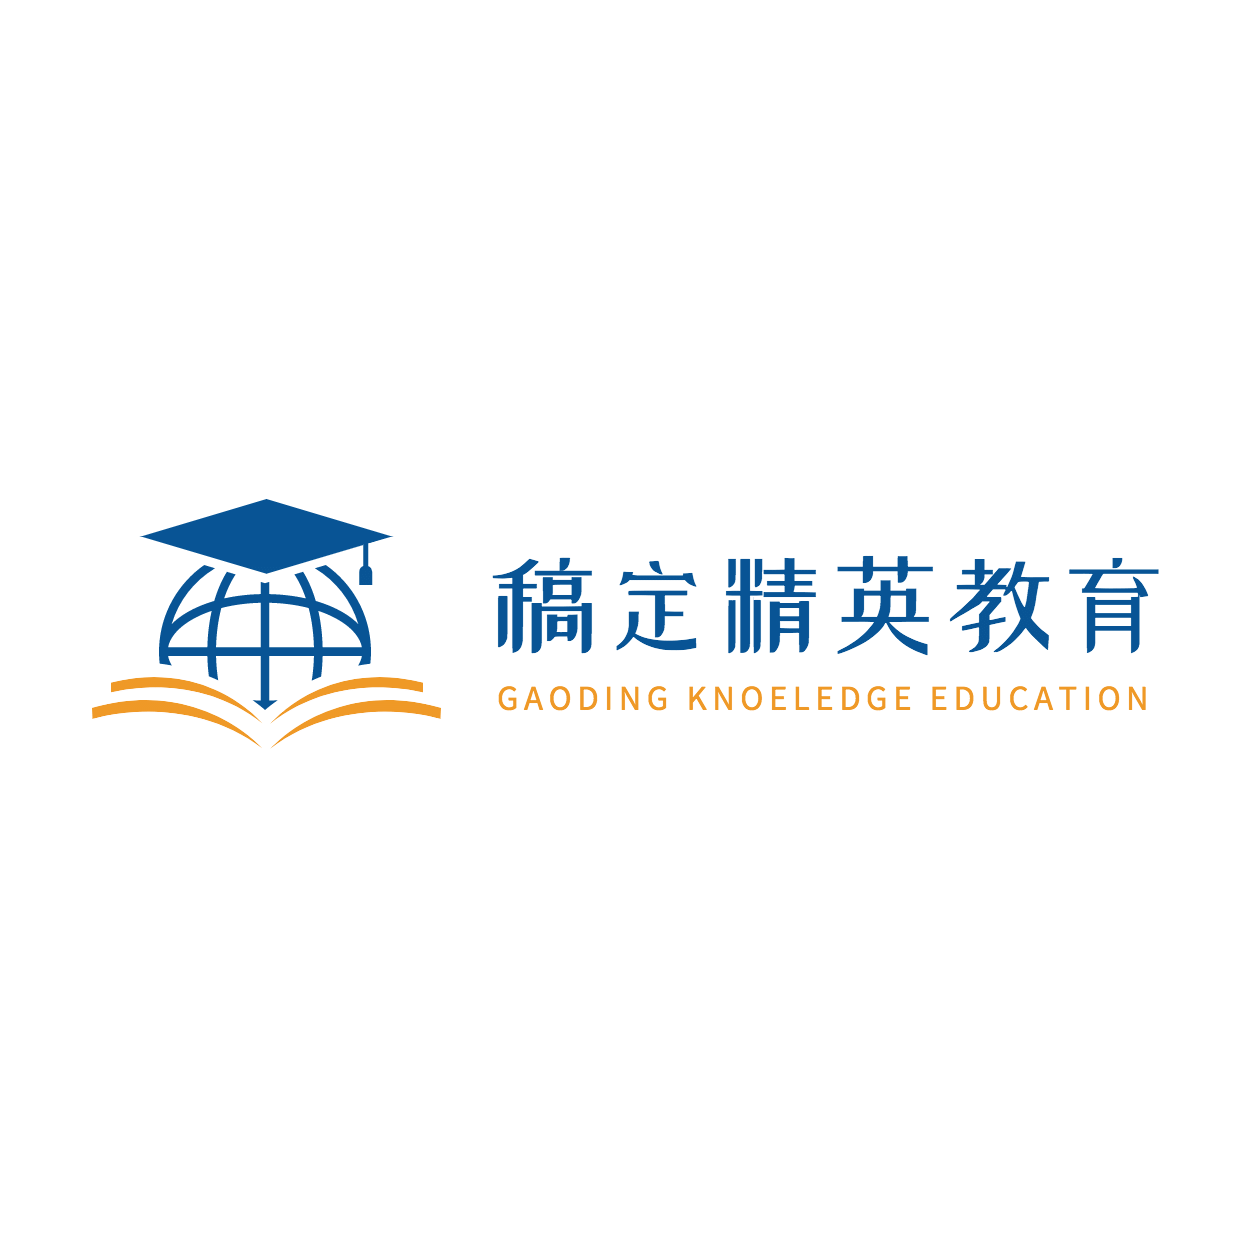 精英教育公考国考教育培训头像logo